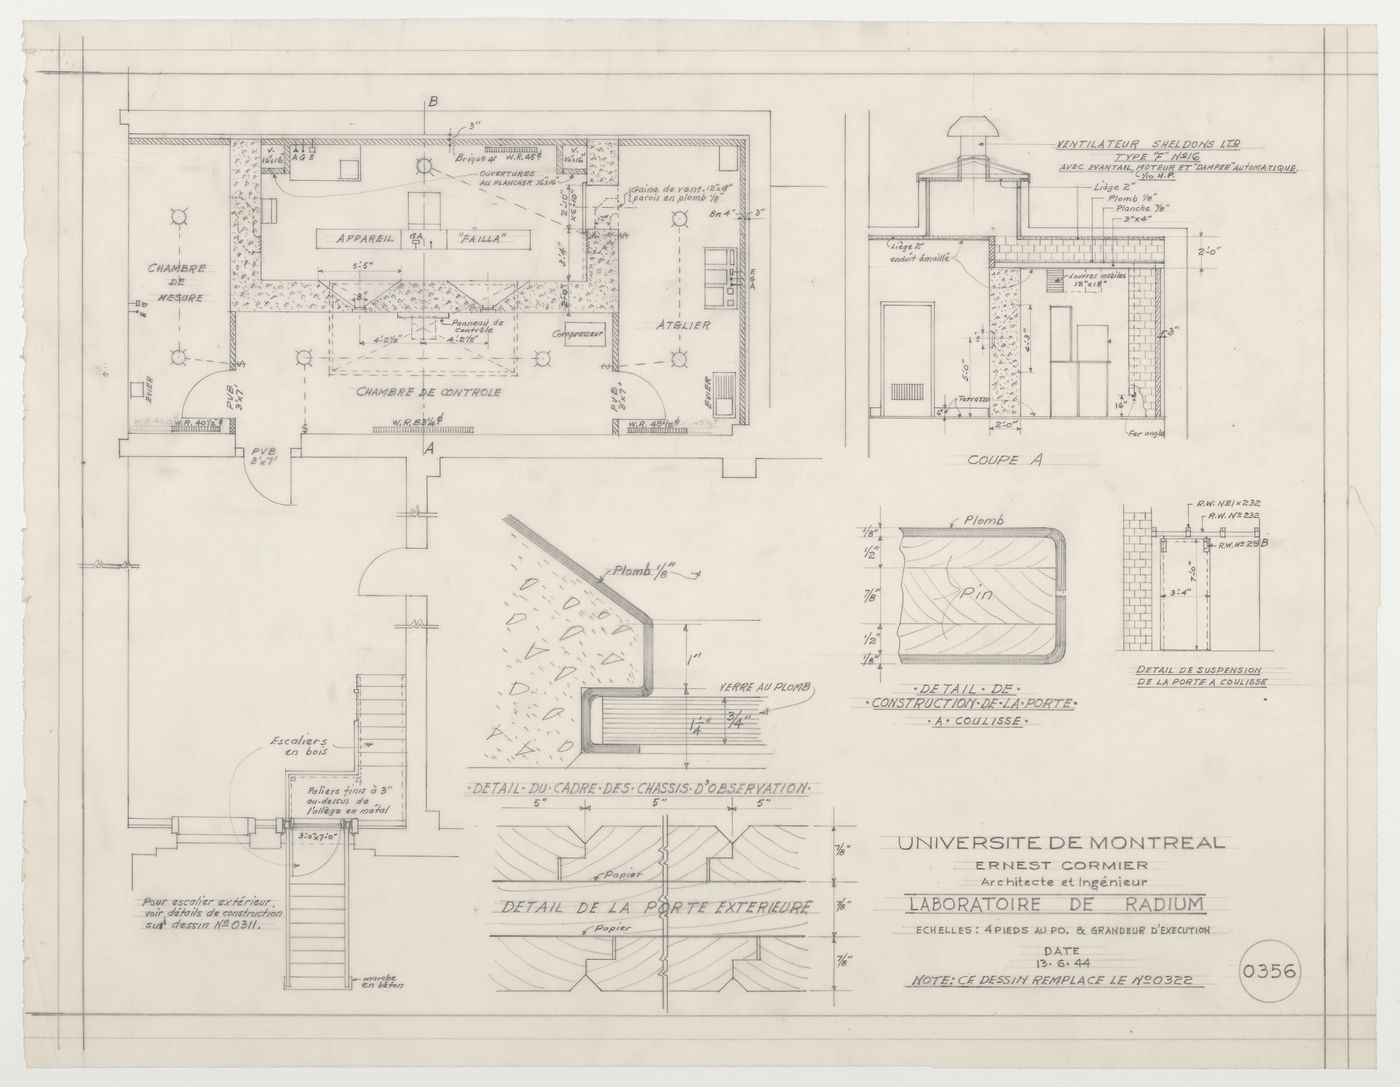 Plan et détails du laboratoire de radium, Pavillon principal et campus, Université de Montréal, Montréal, Canada (1924-1947)